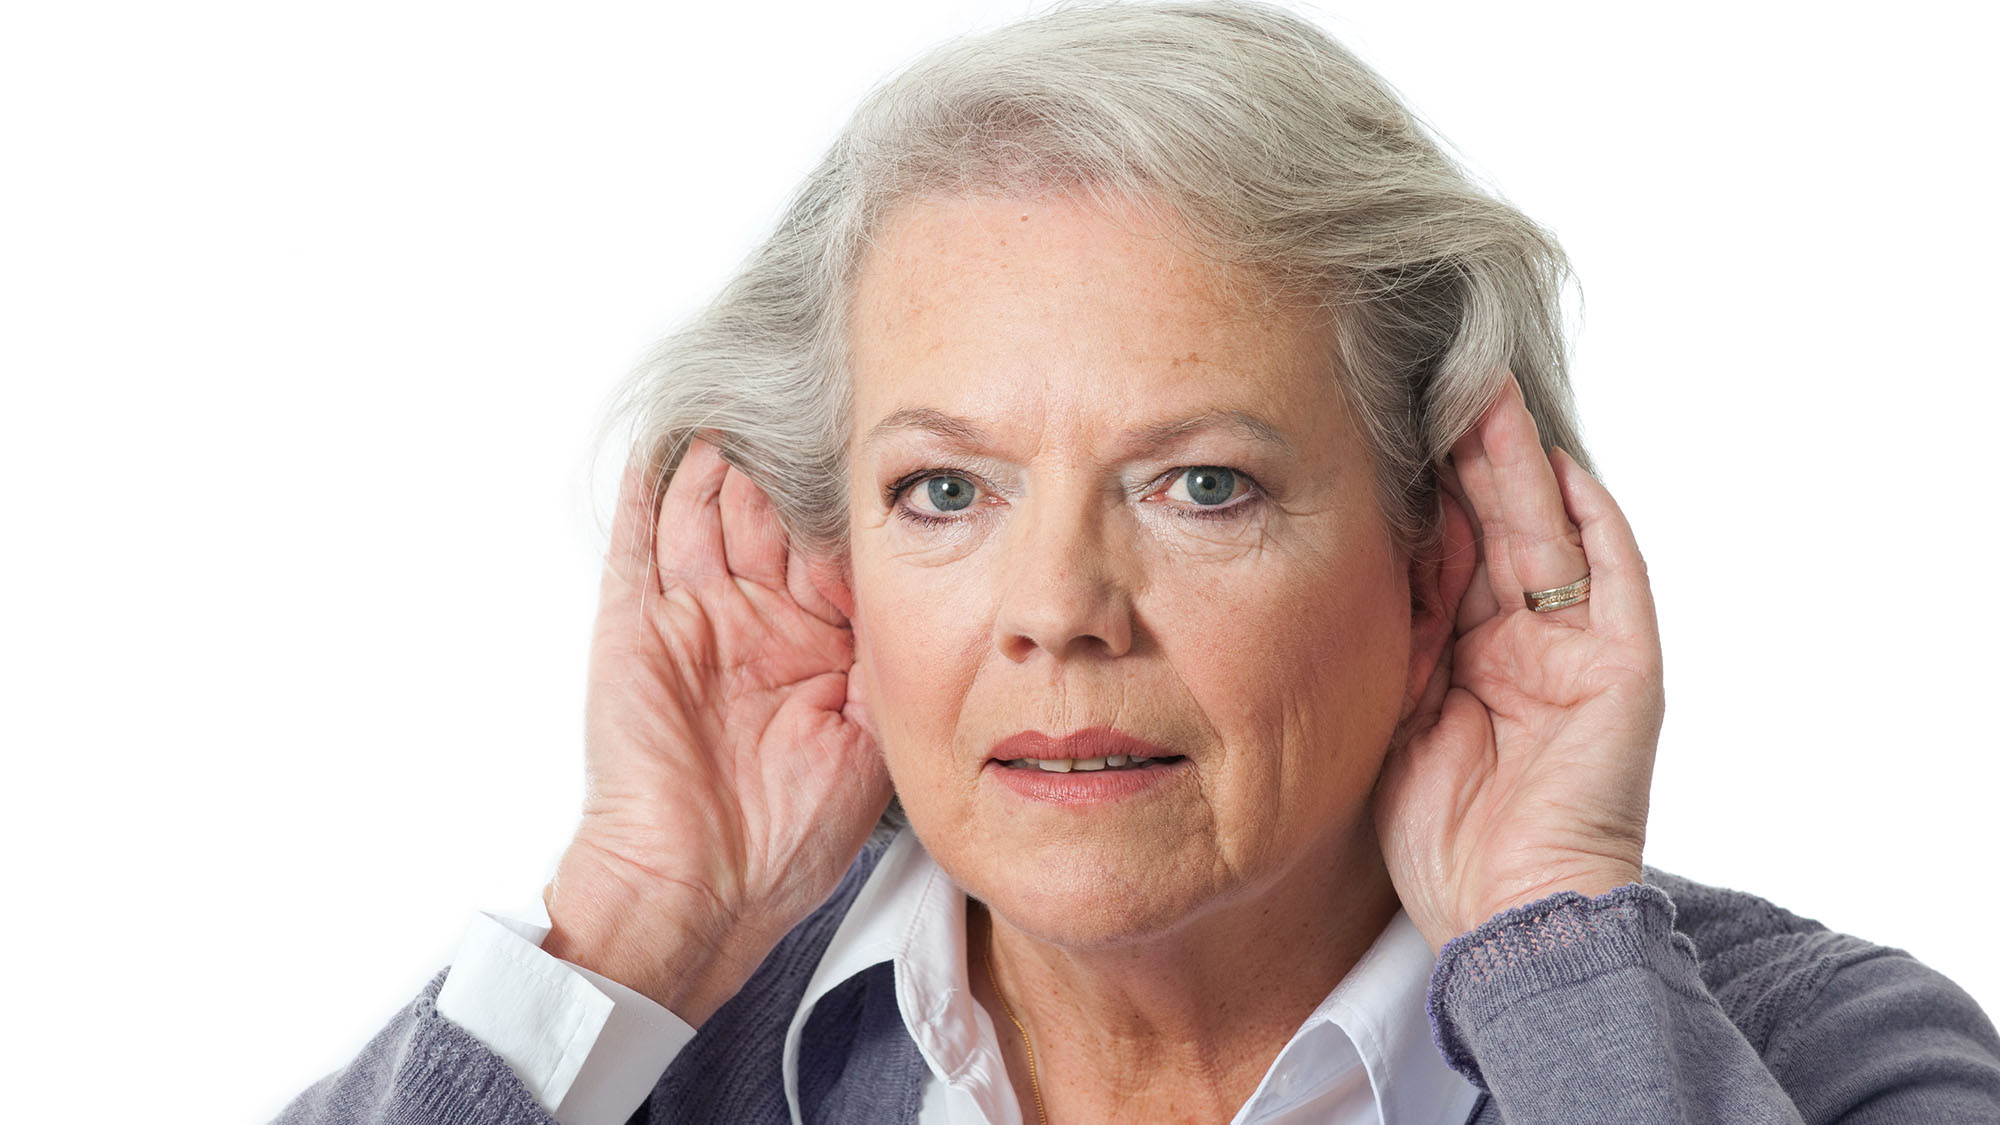 Don’t let hearing loss turn to social loss